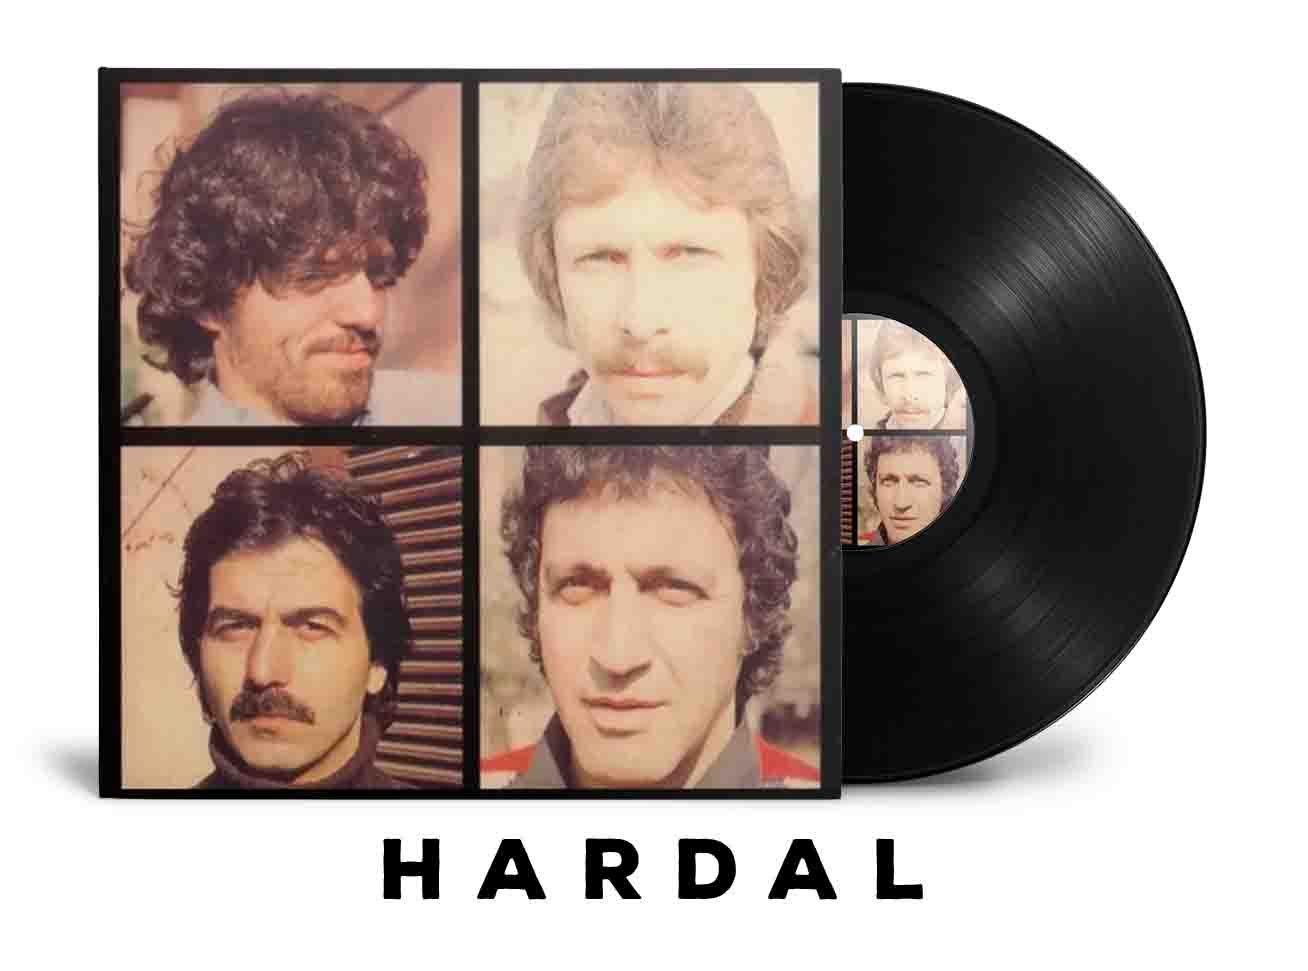 Hardal